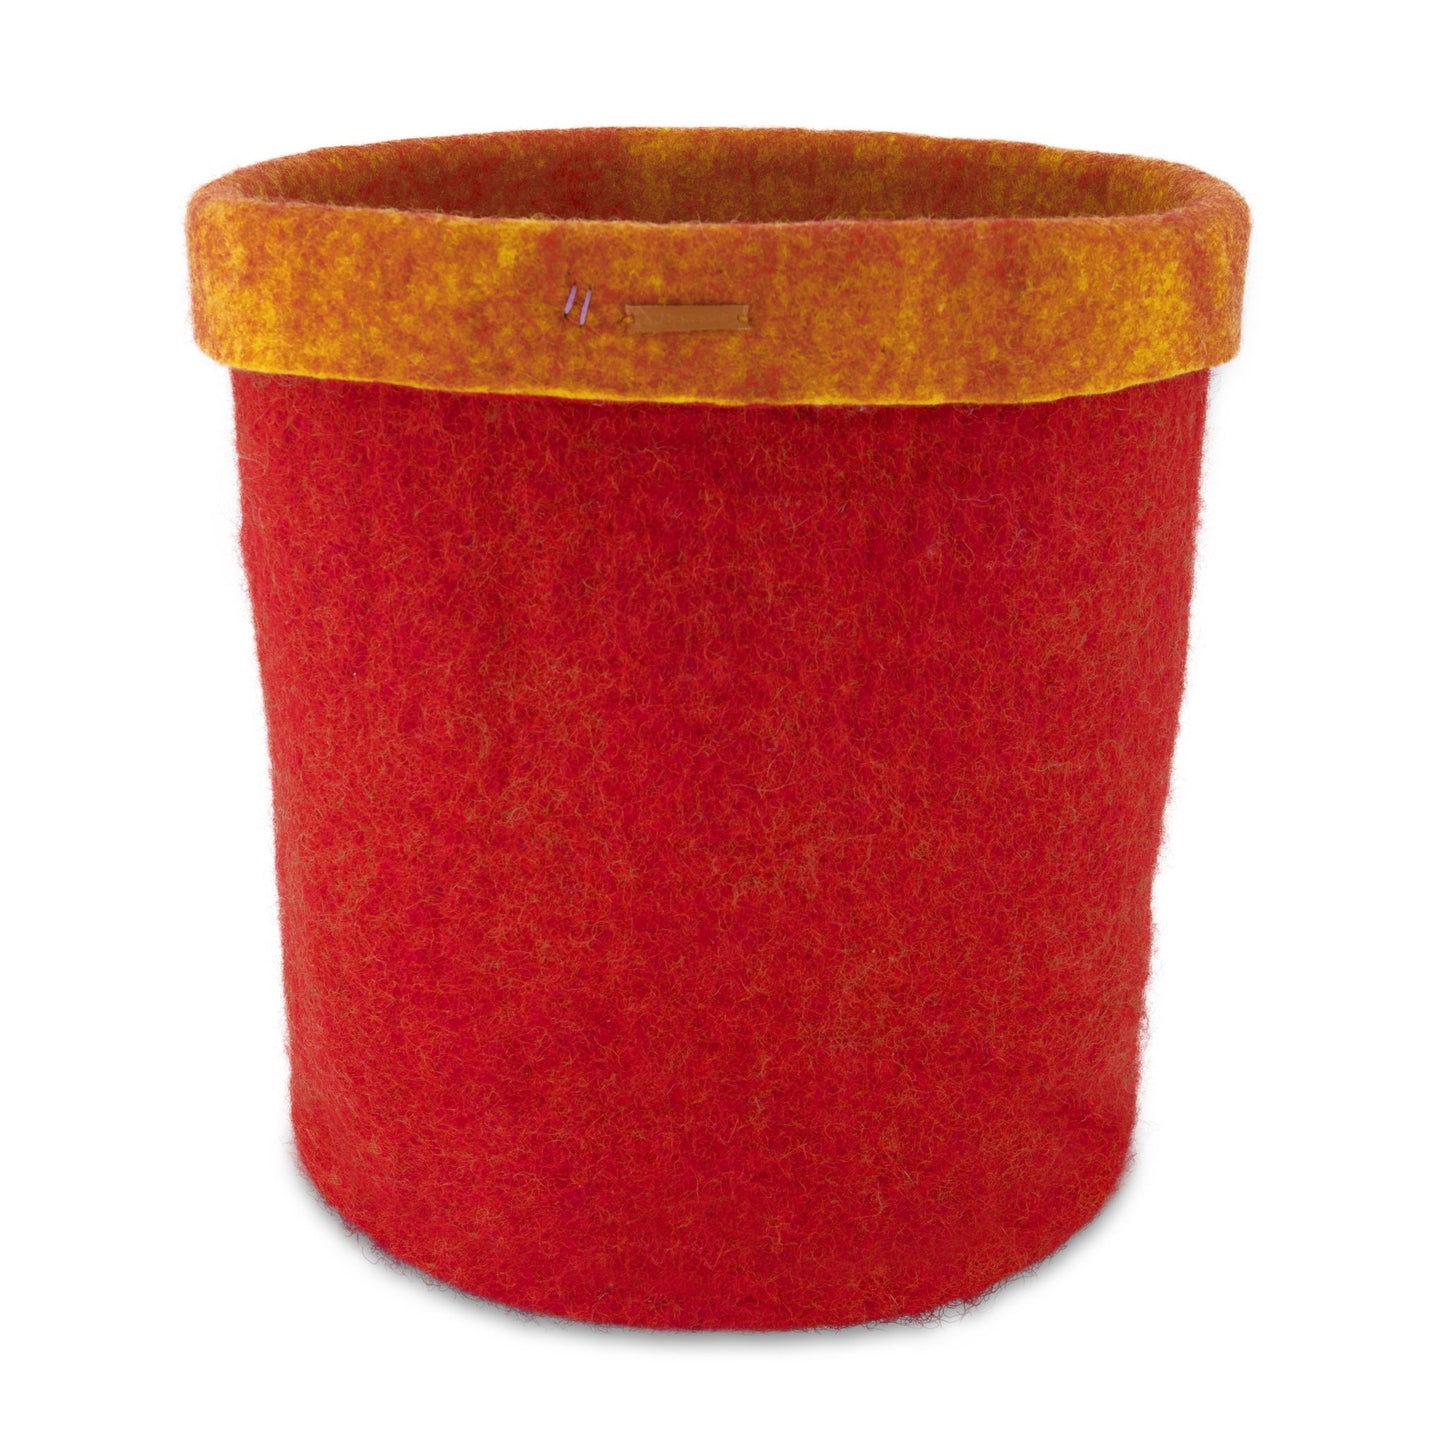 Felt Storage Basket - Red